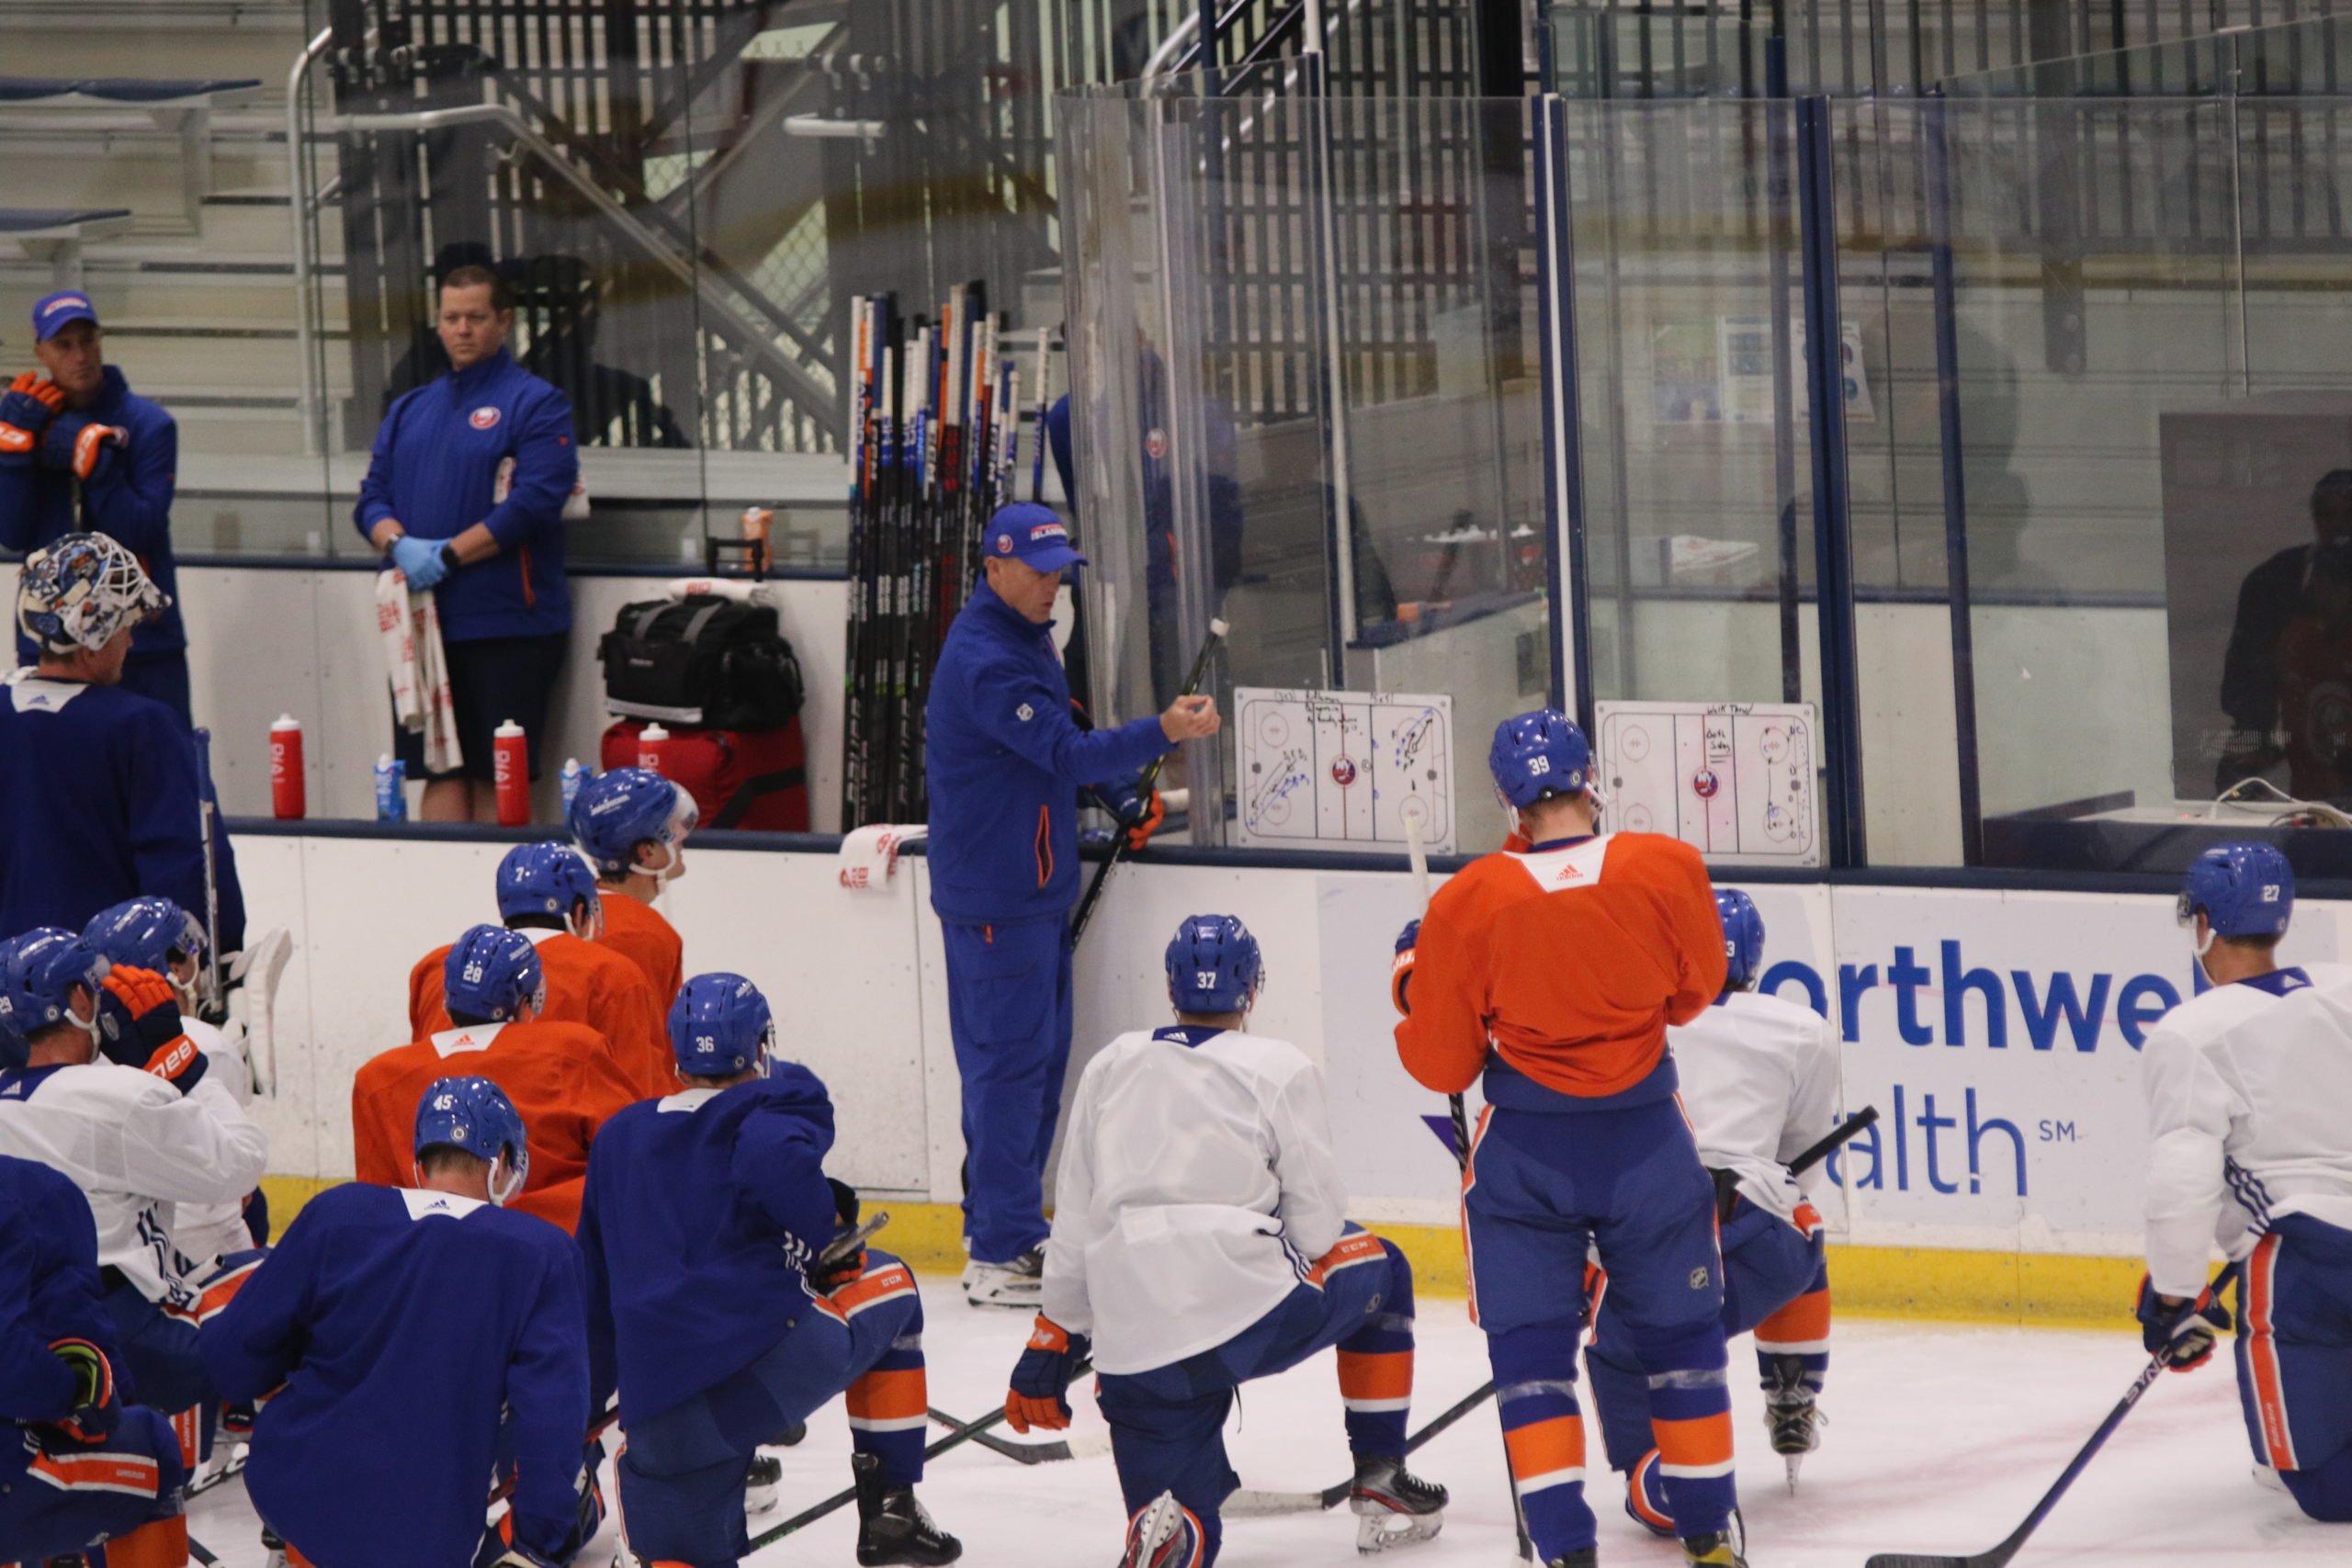 Ruslan Iskhakov will need to impress at NY Islanders training camp